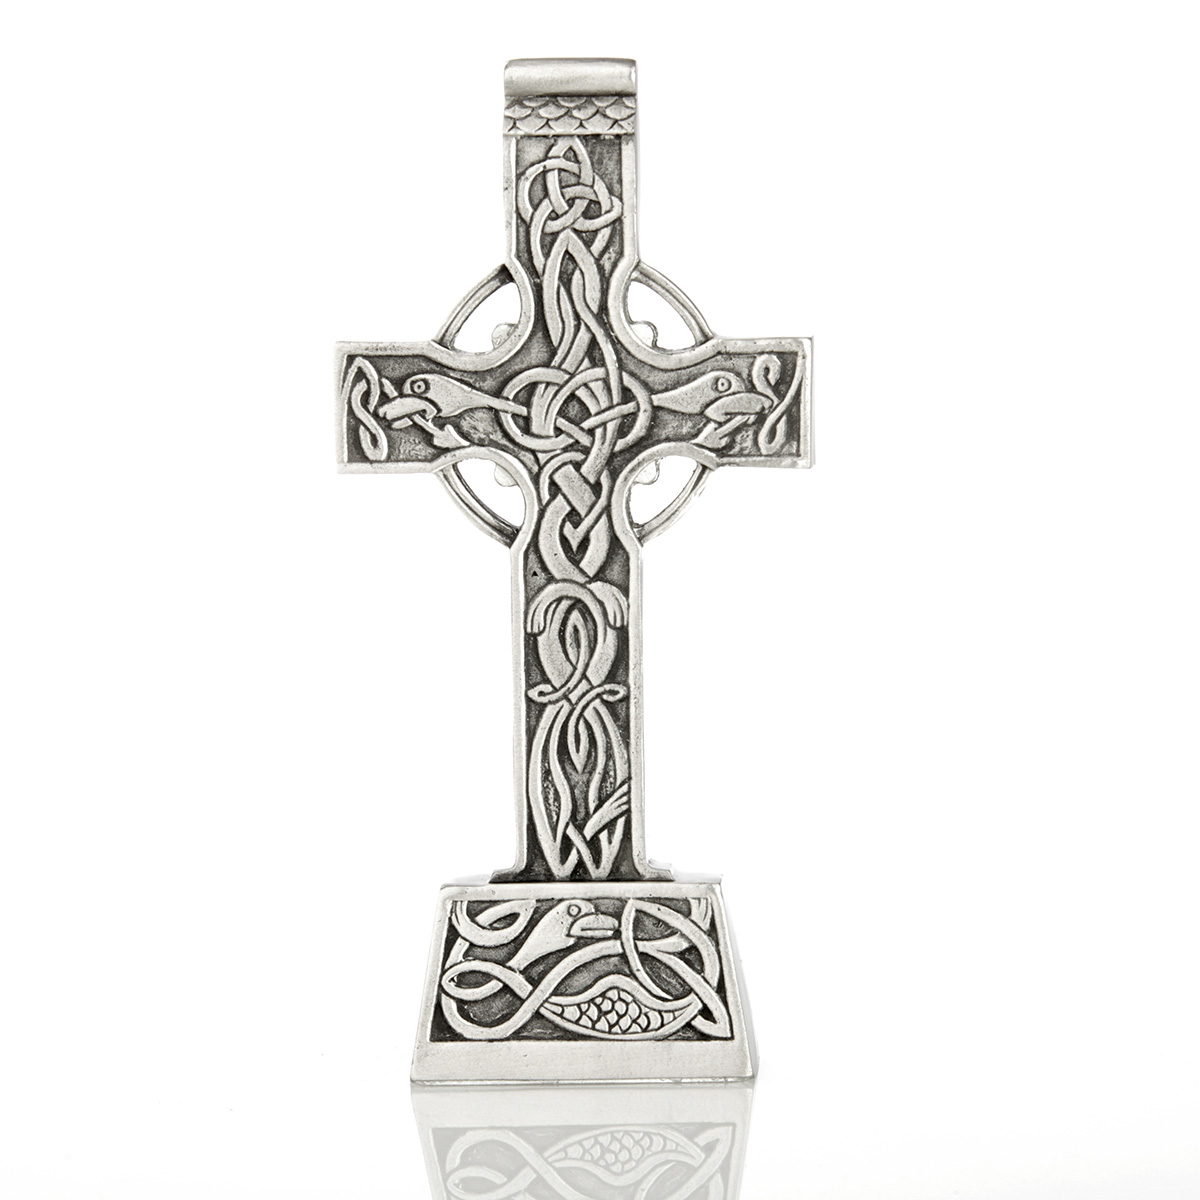 Great Celtic Cross - reich verziertes keltisches Kreuz - Handgefertigt in Irland